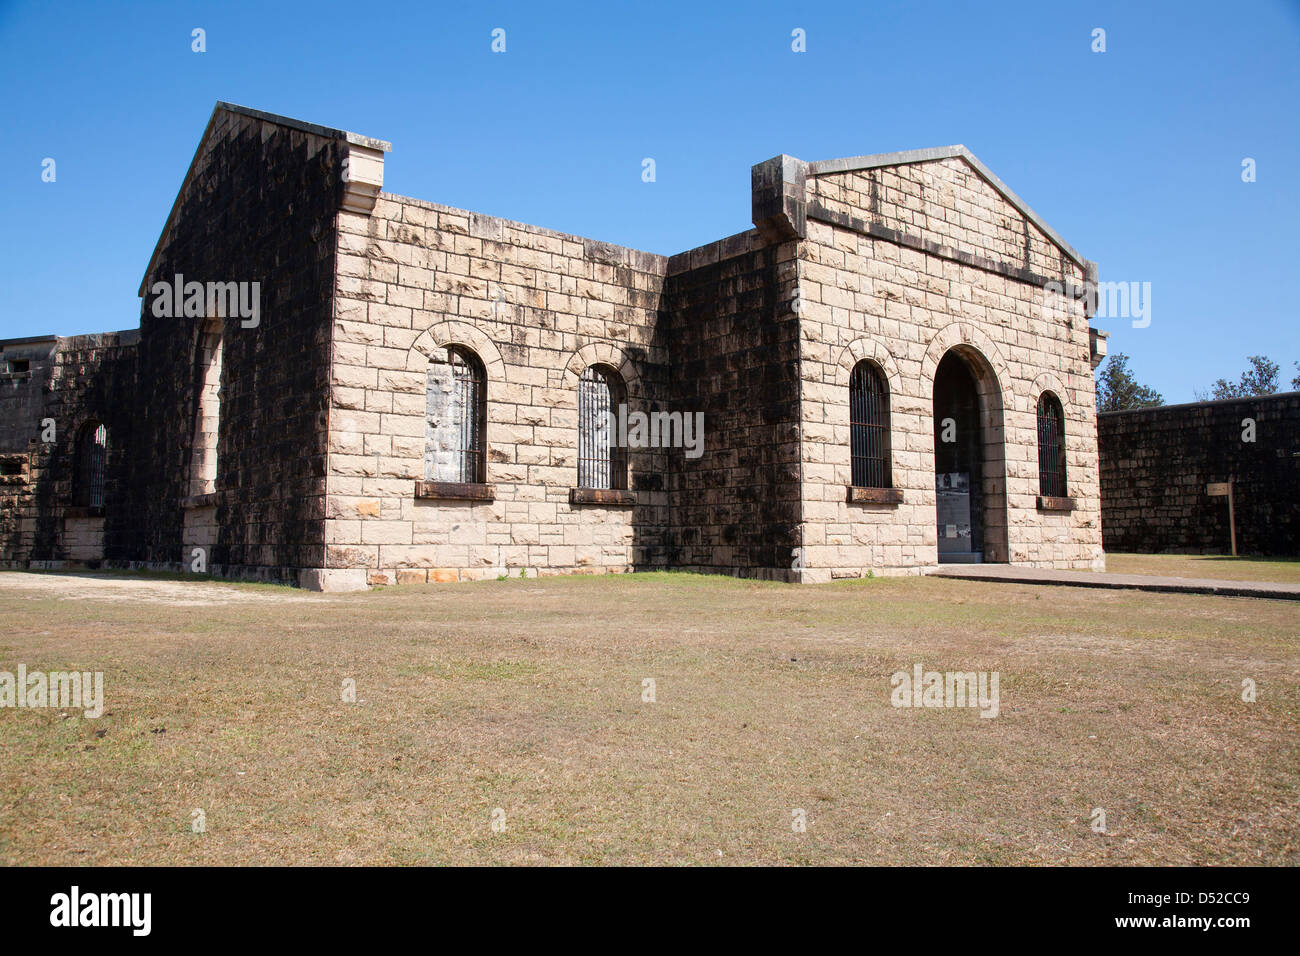 Trial Bay Gaol - Arakoon Parco Nazionale vicino a sud ovest di Rock NSW Australia Foto Stock